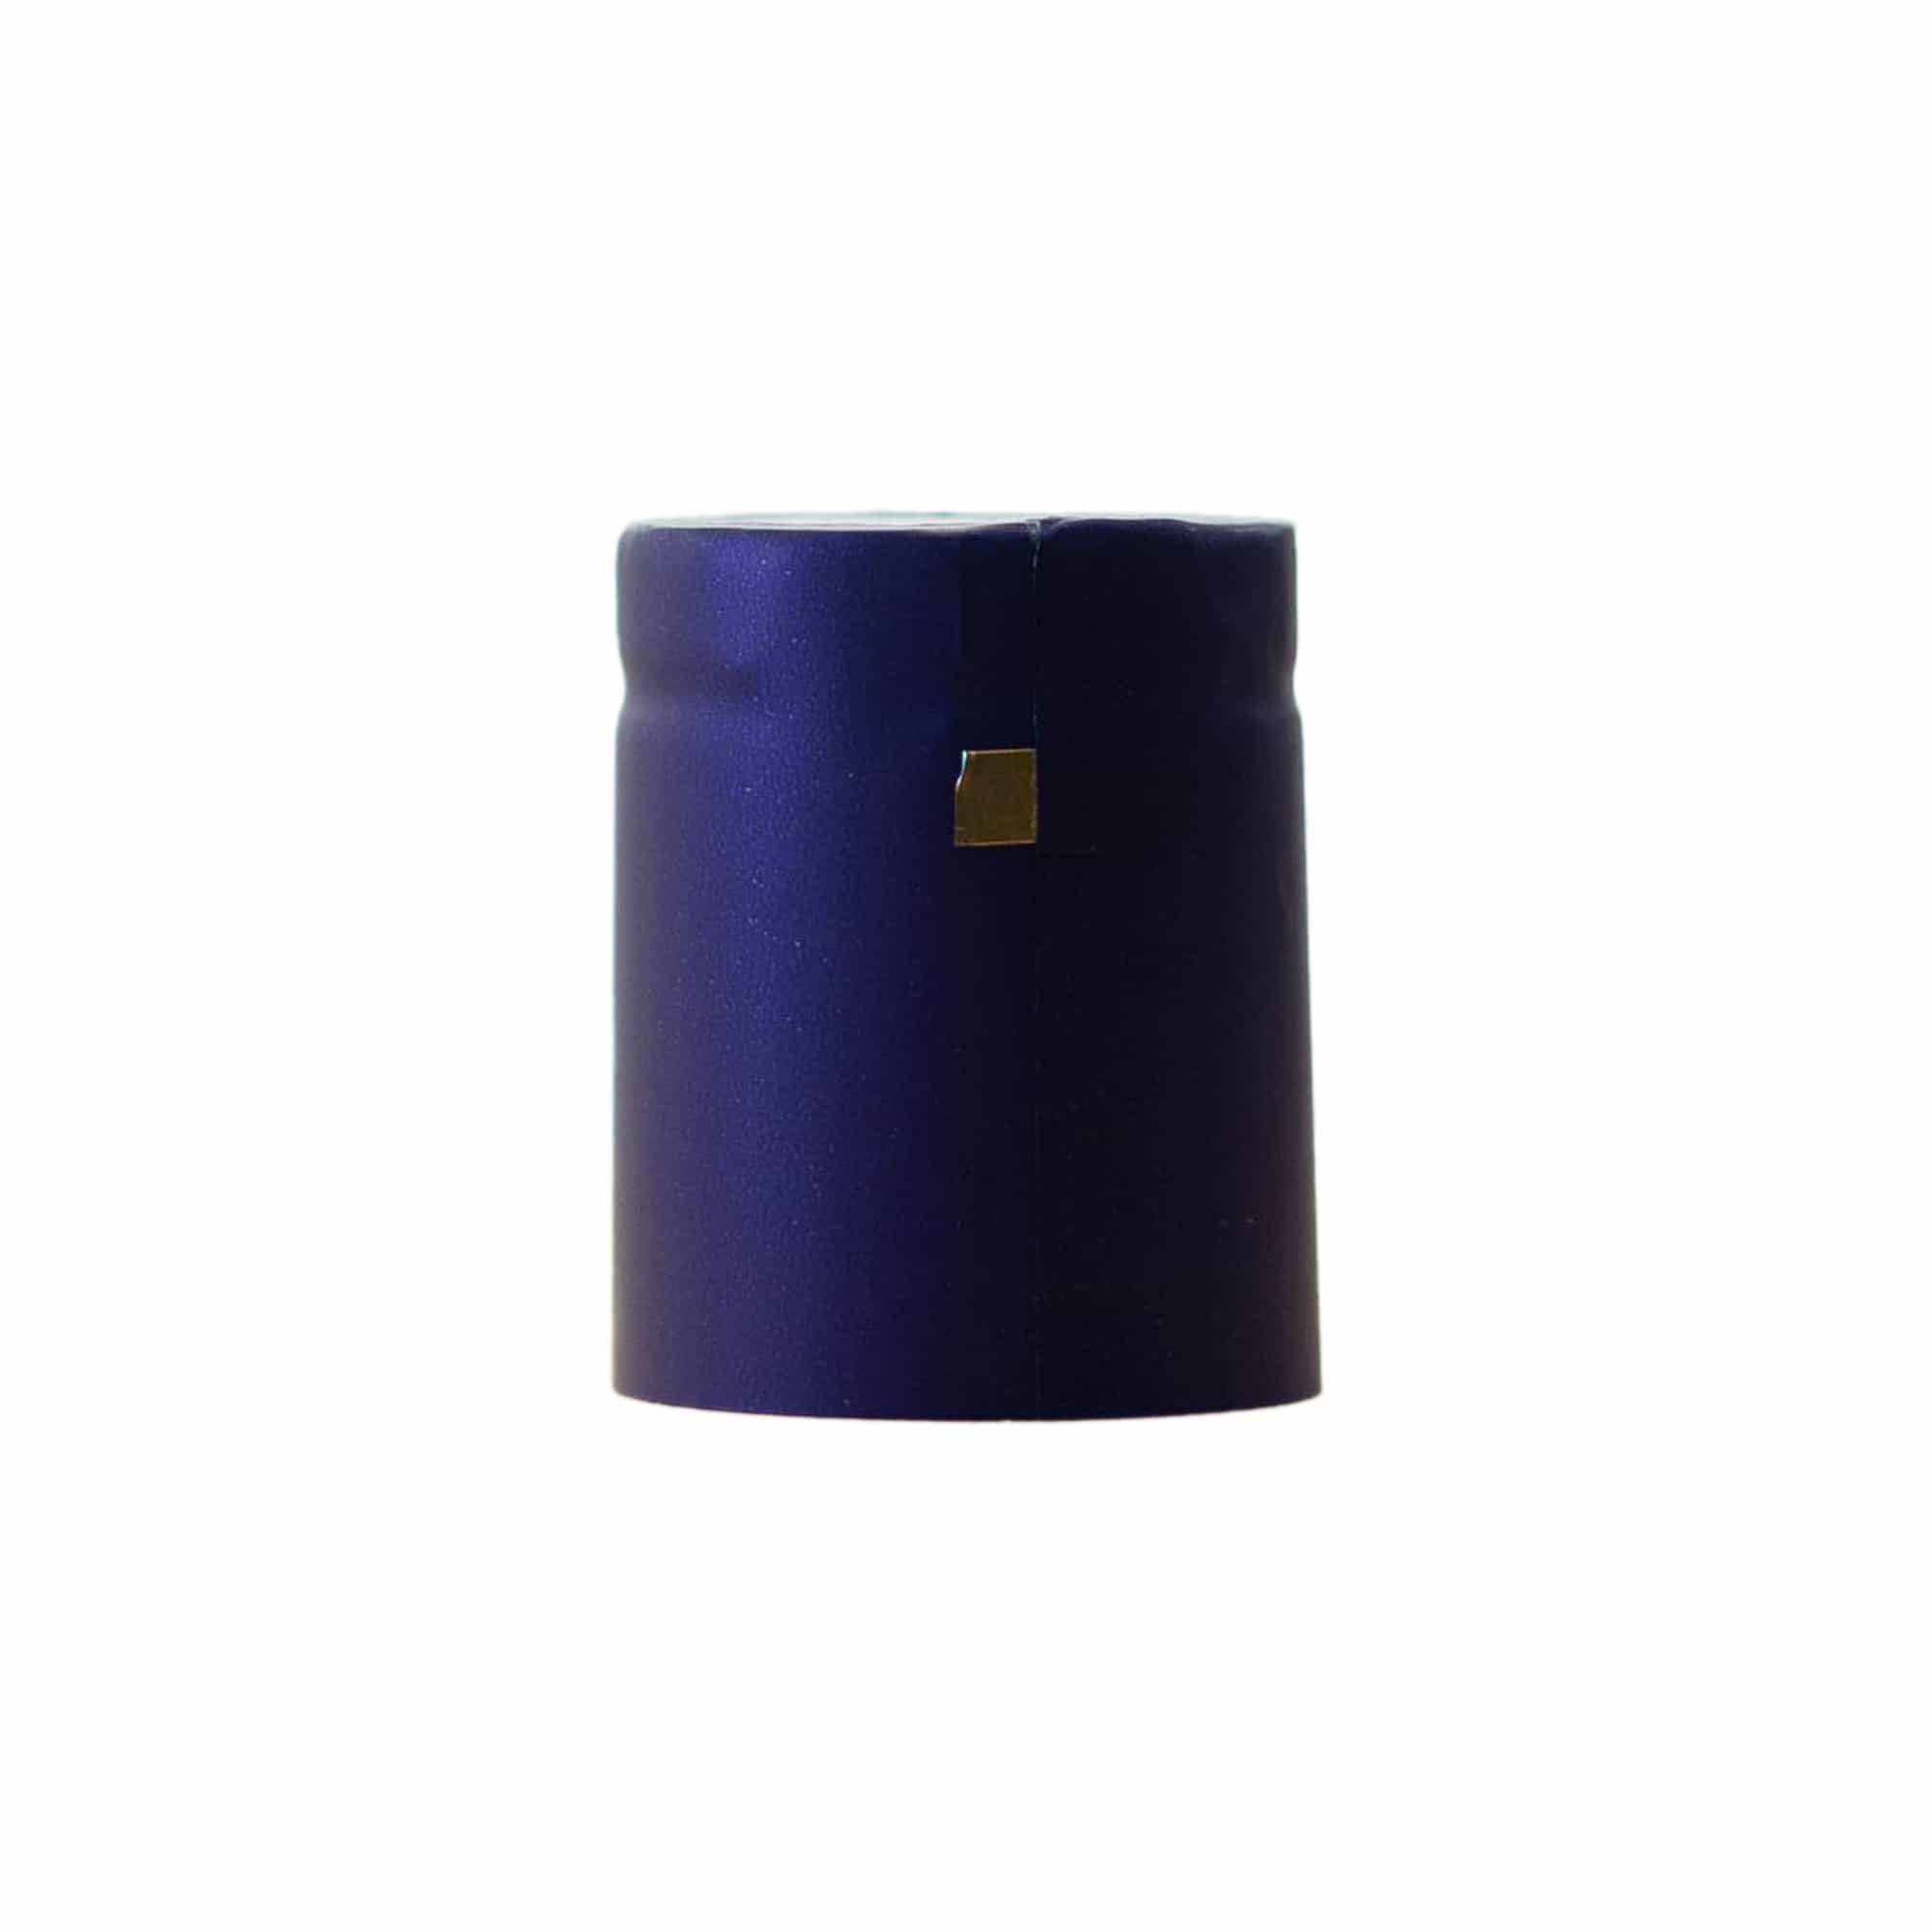 Kapturek termokurczliwy 32x41, tworzywo sztuczne PVC, kolor fioletowy